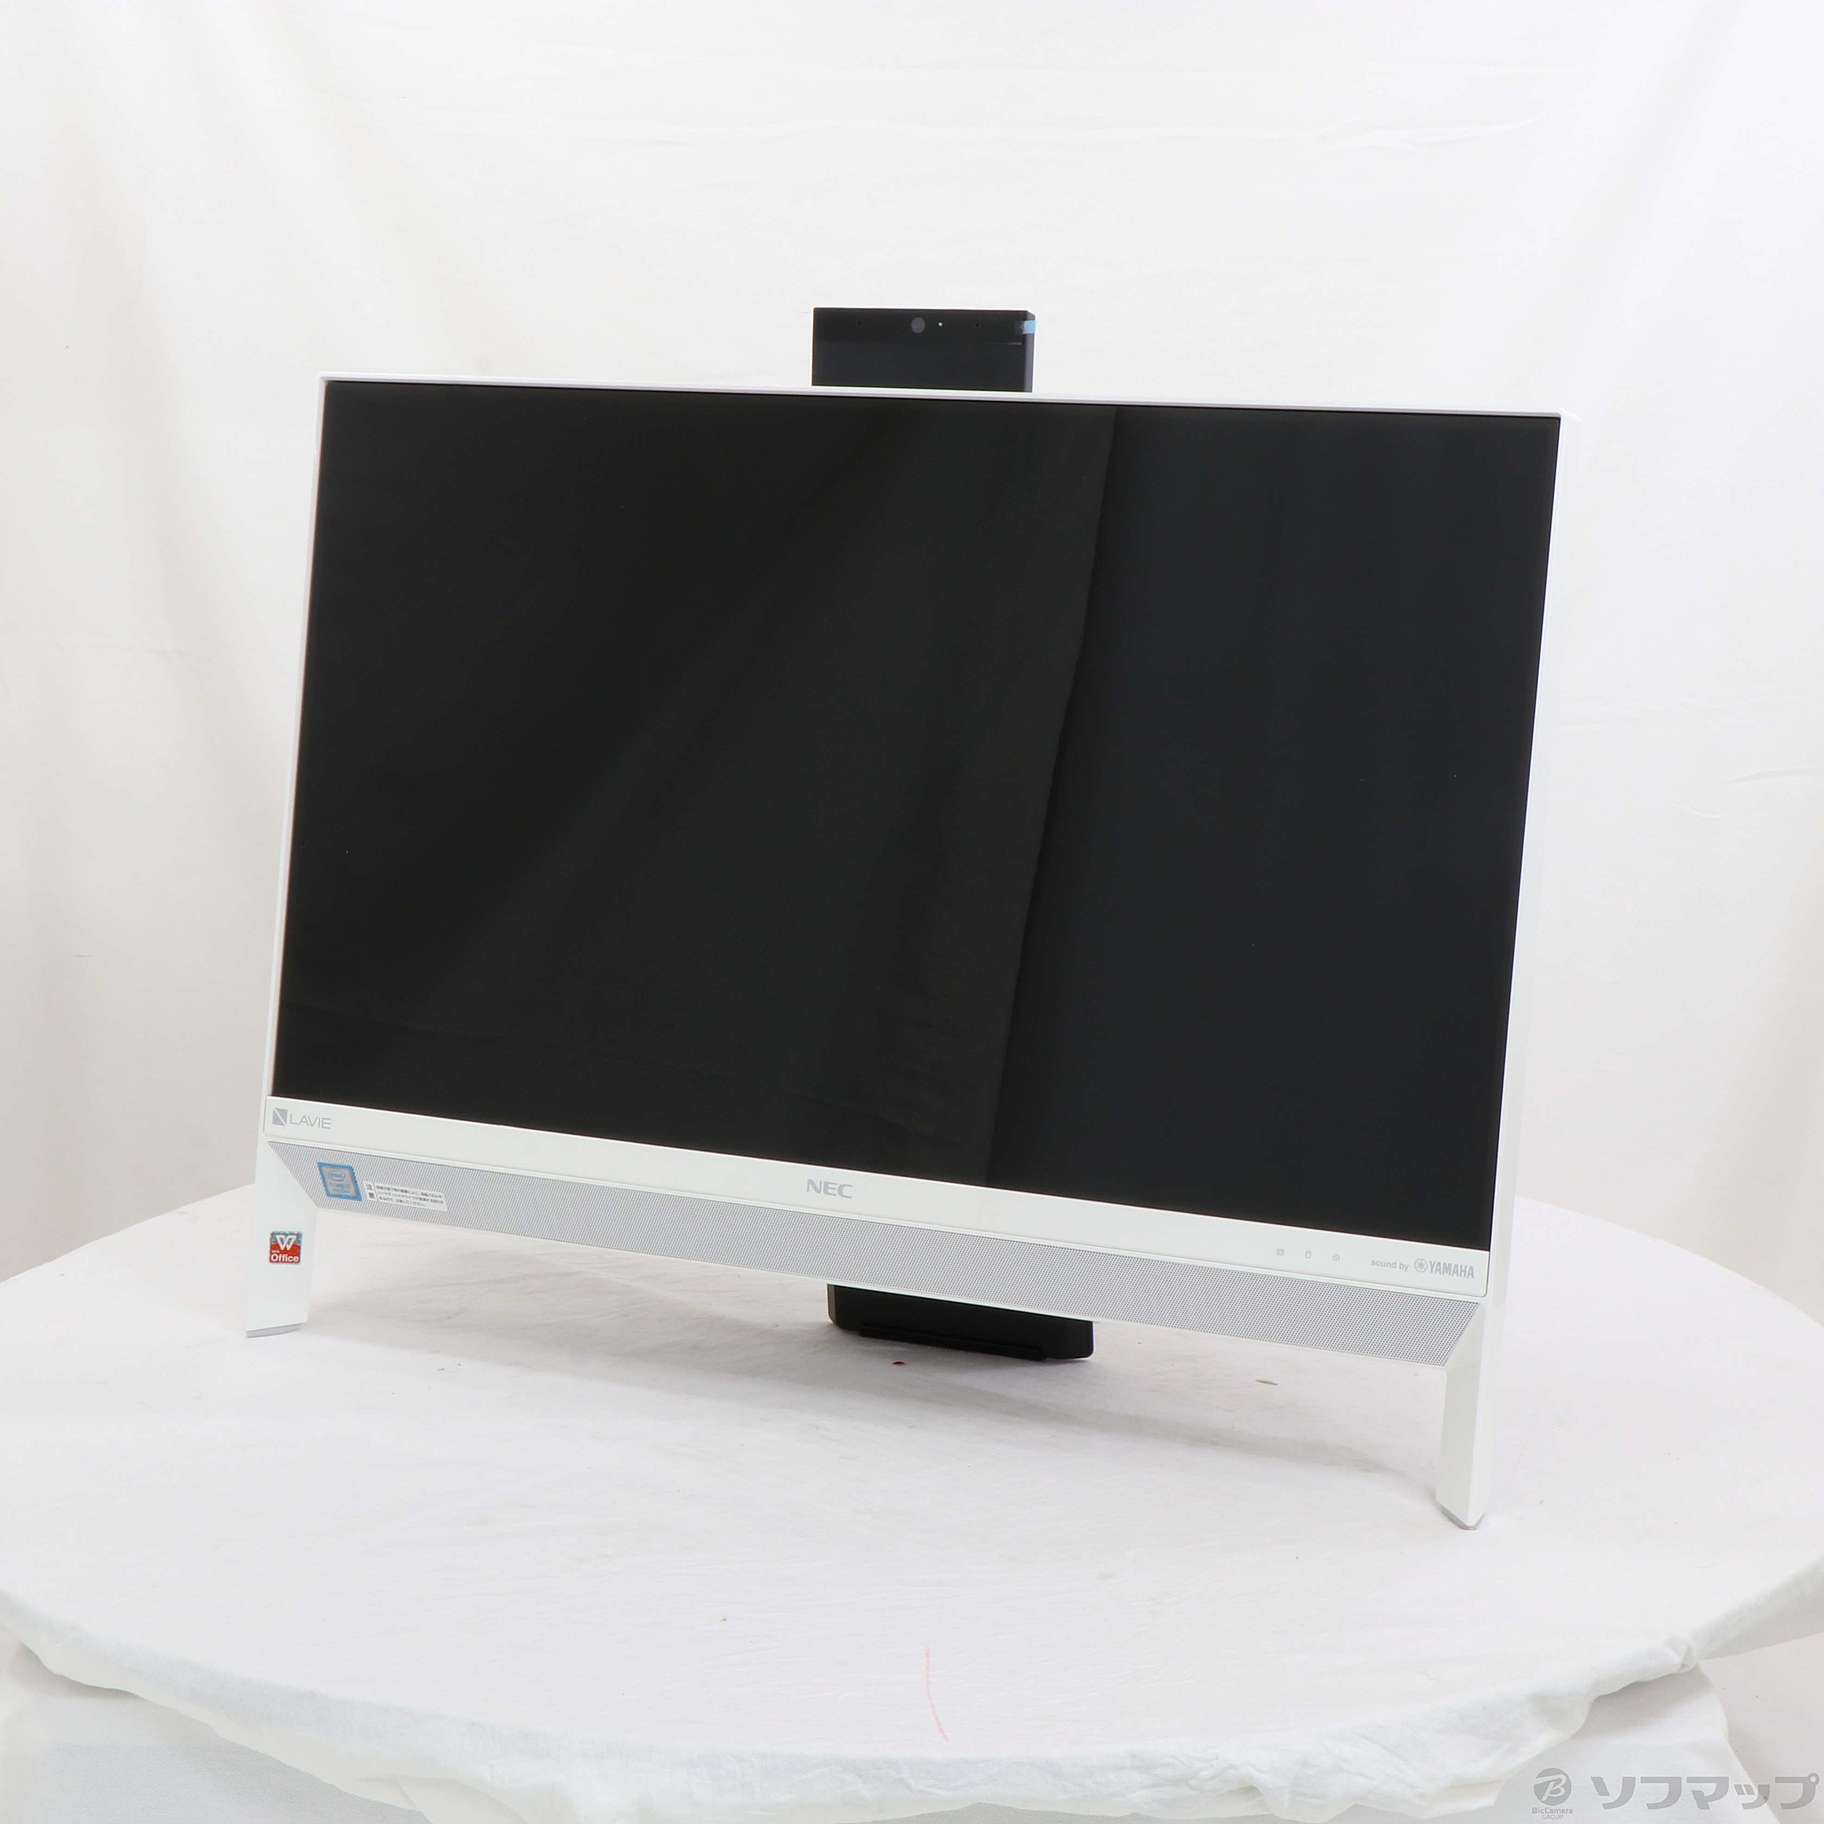 中古】LAVIE Desk All-in-one PC-DA700KAW ファインホワイト 〔Windows